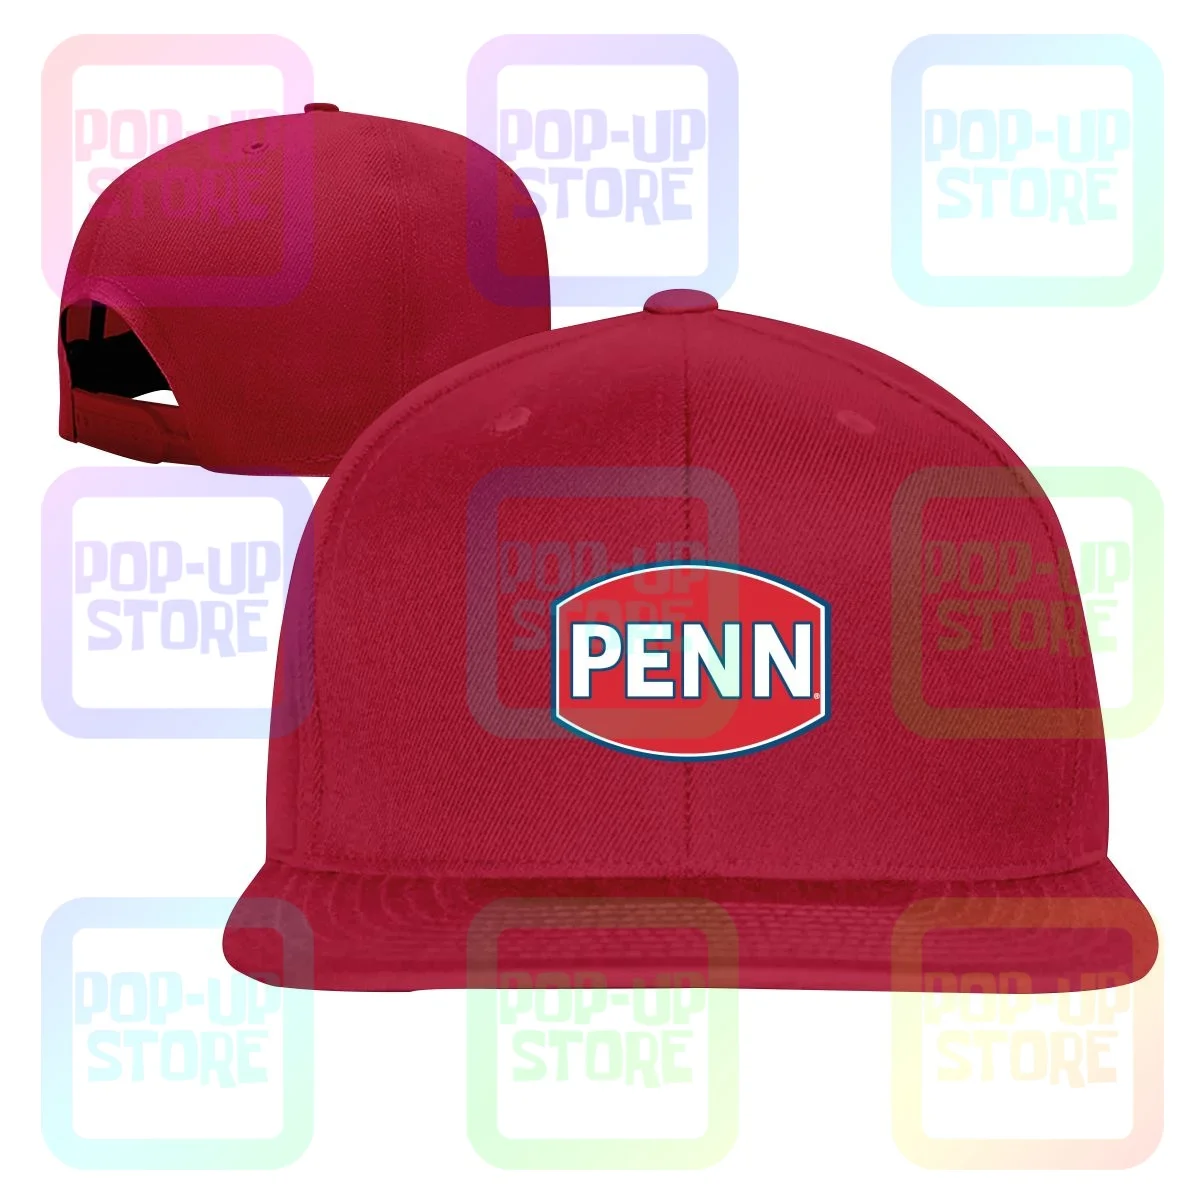 Penn Fishing Gear Reel Rod Snapback Cap Baseball Caps Cool Splicing Hot  Selling